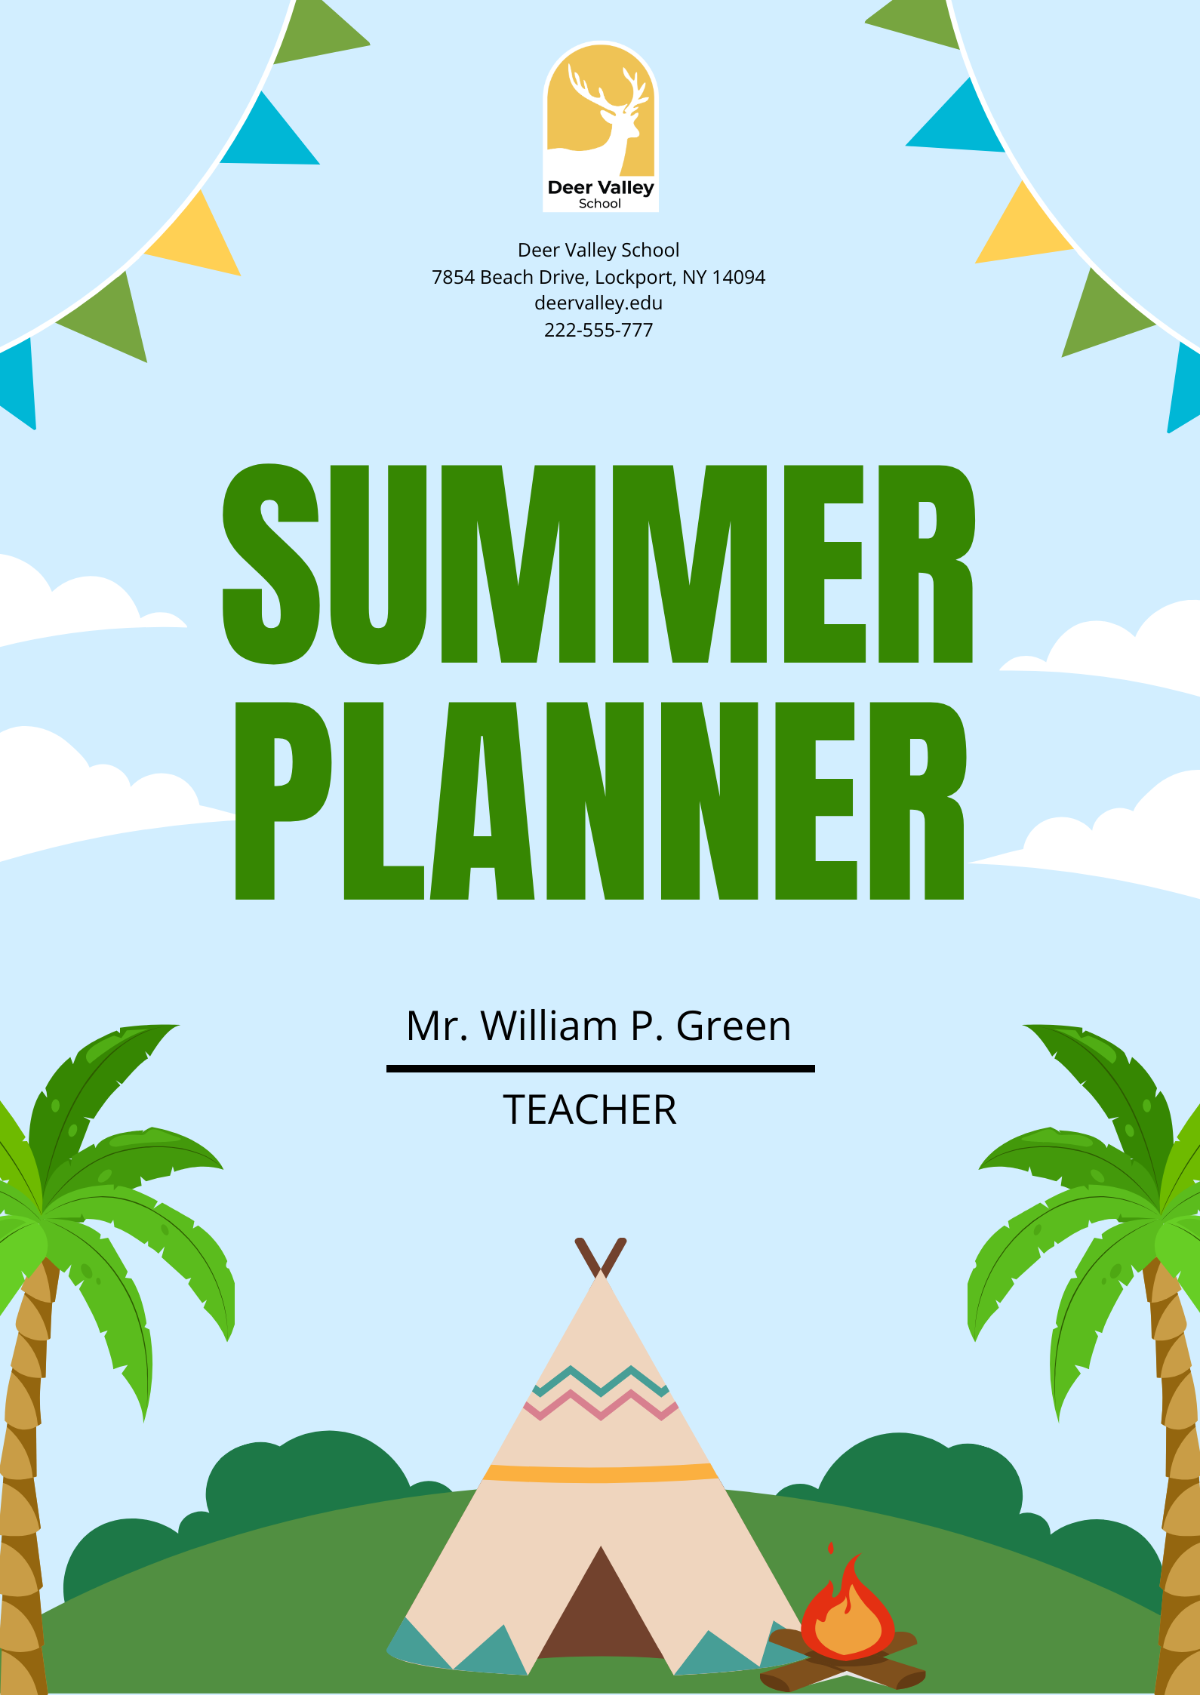 Summer Planner Template